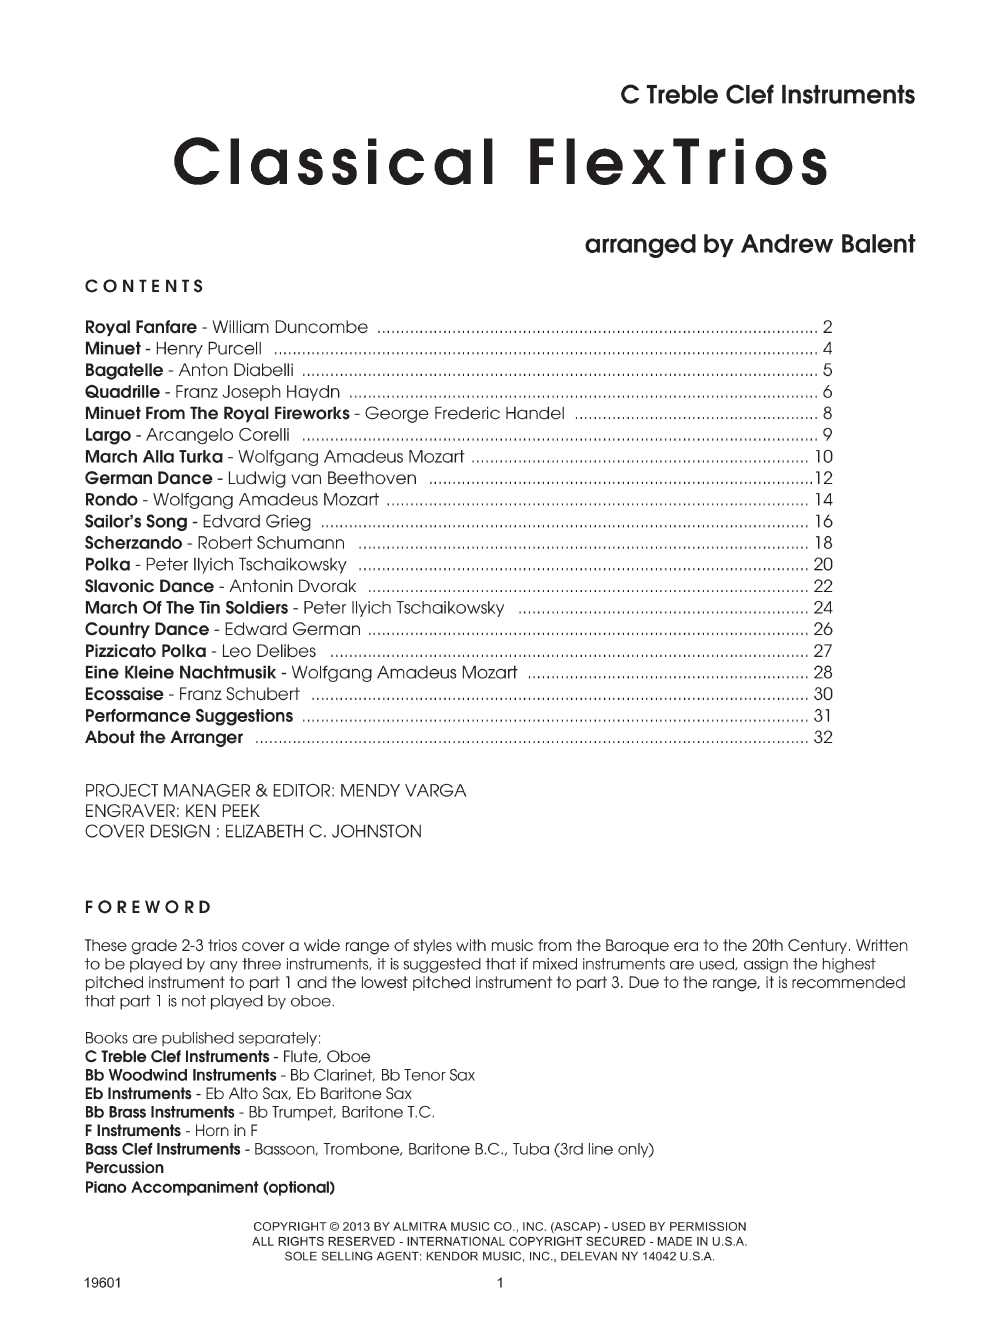 Classical FlexTrios Clarinet / Tenor Sax